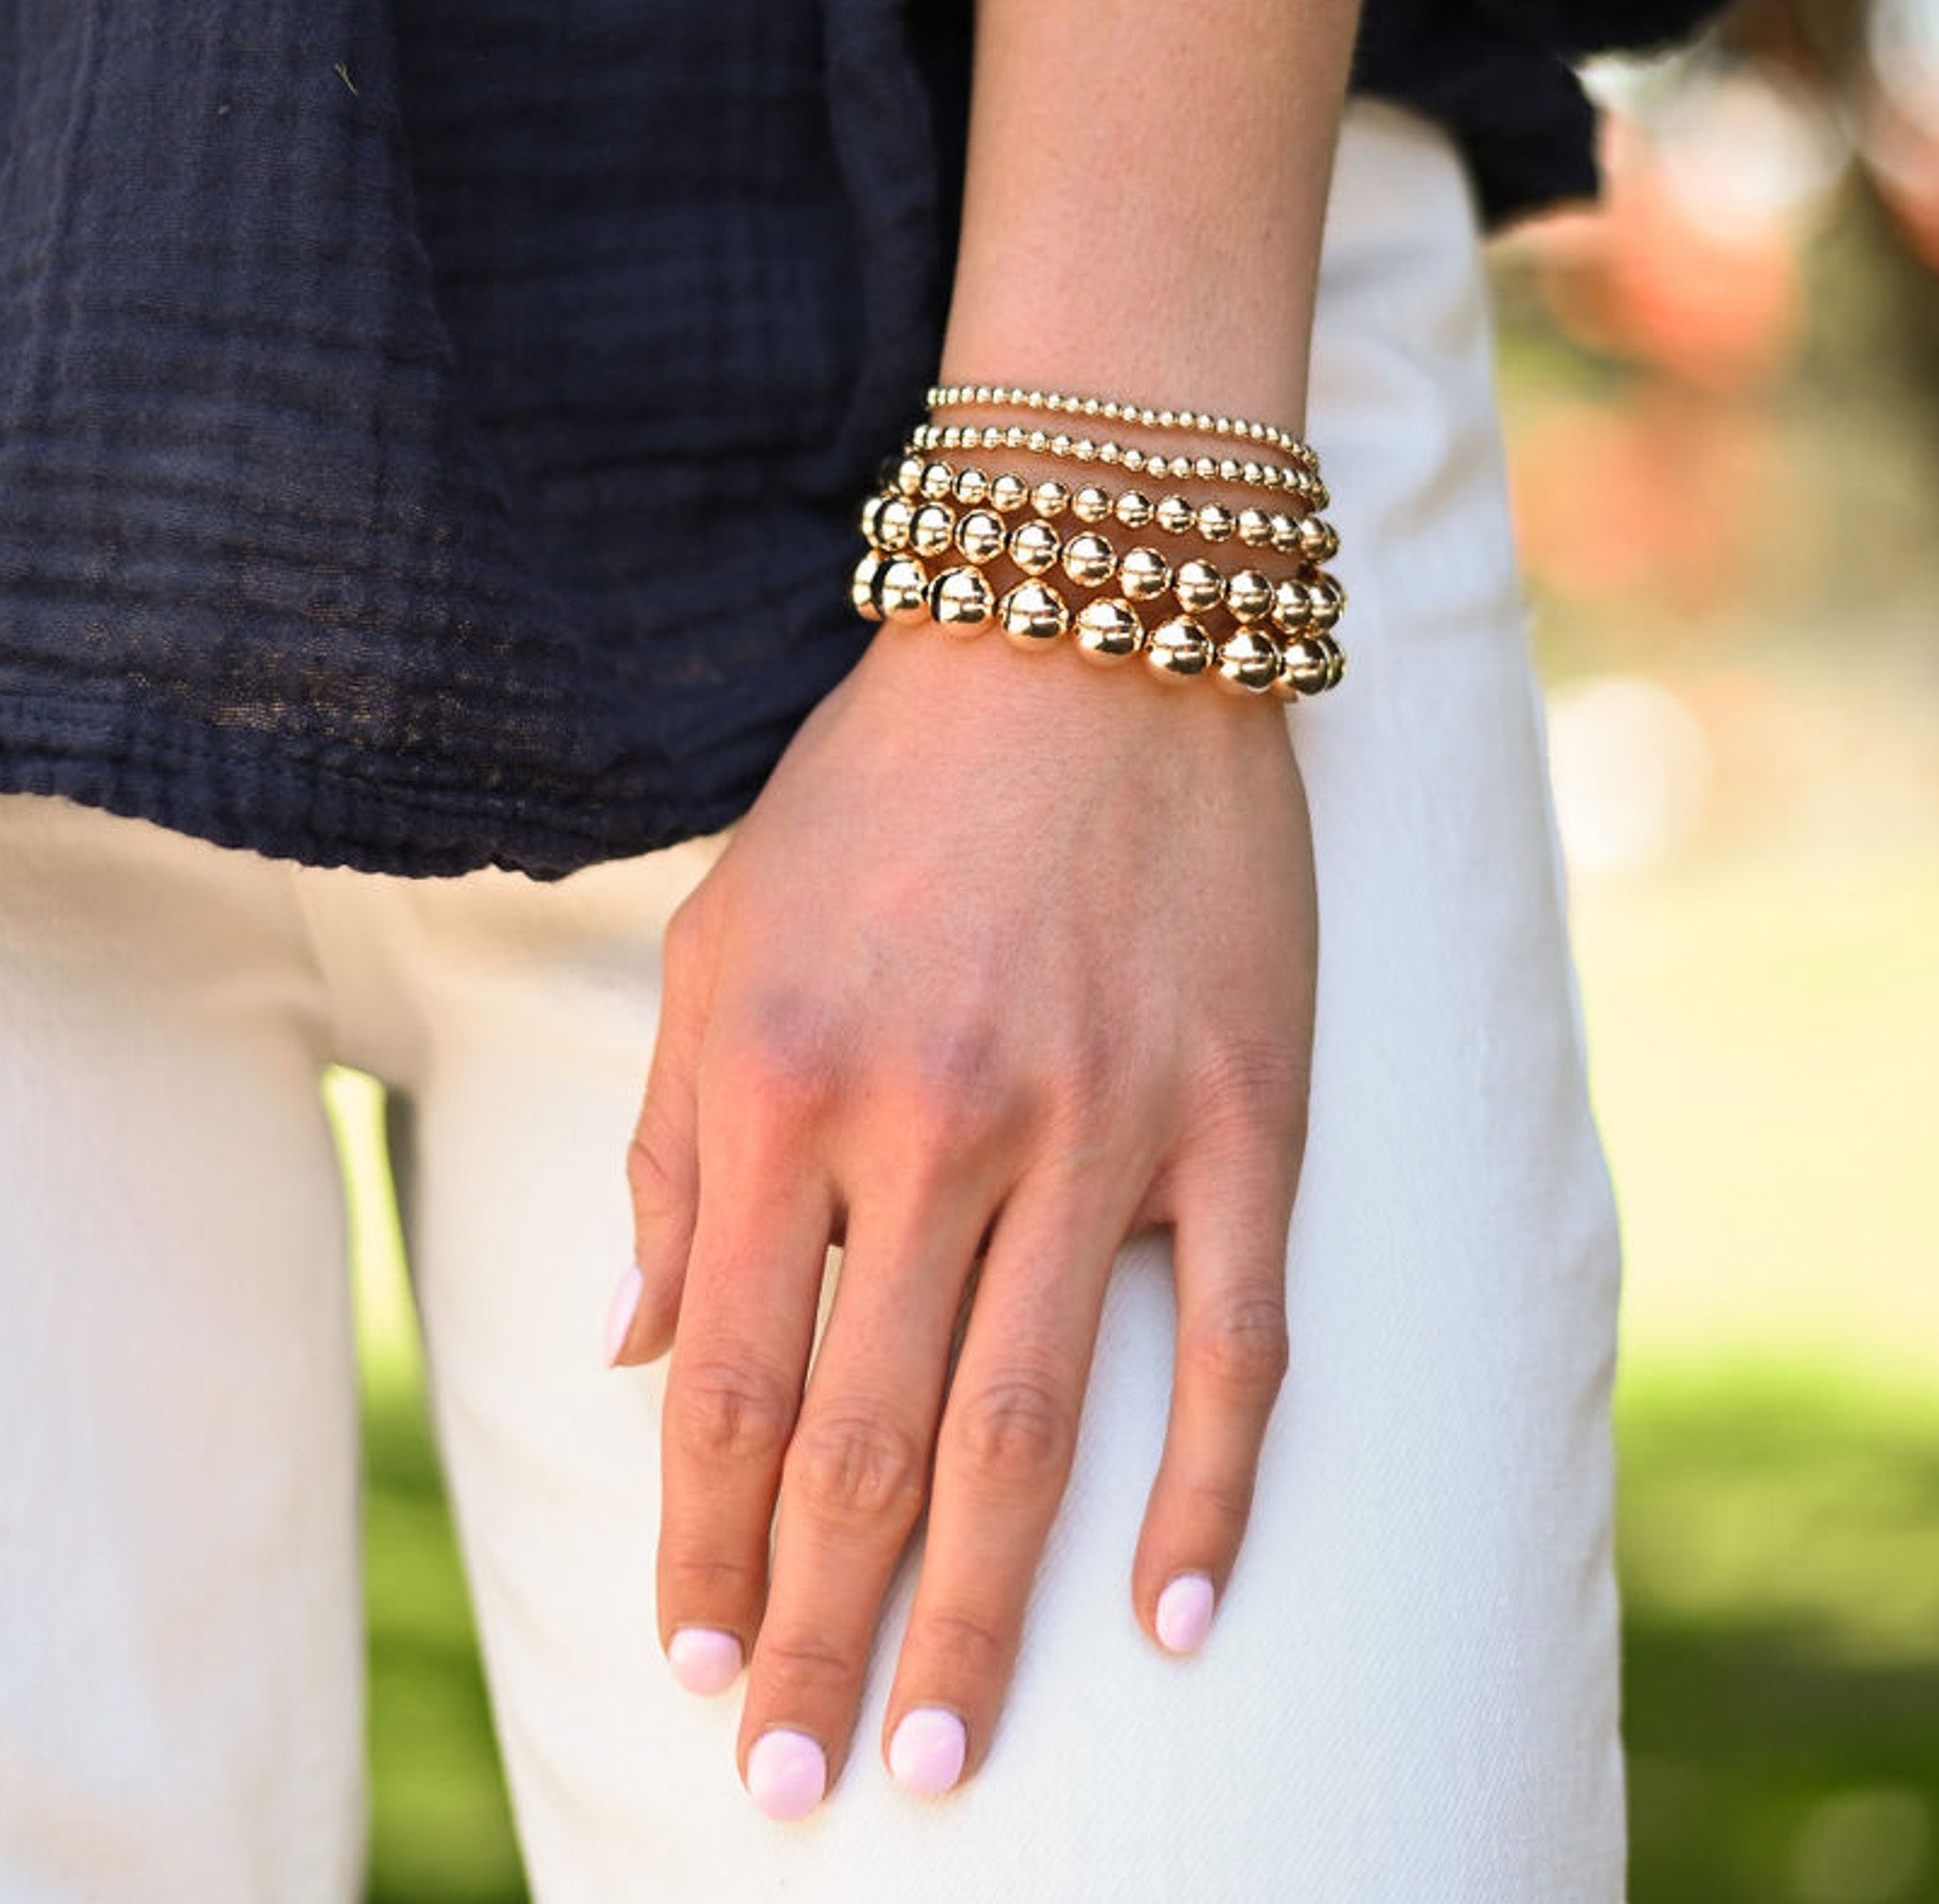 3mm Gold Bead Bracelet - Zoe Lev Jewelry